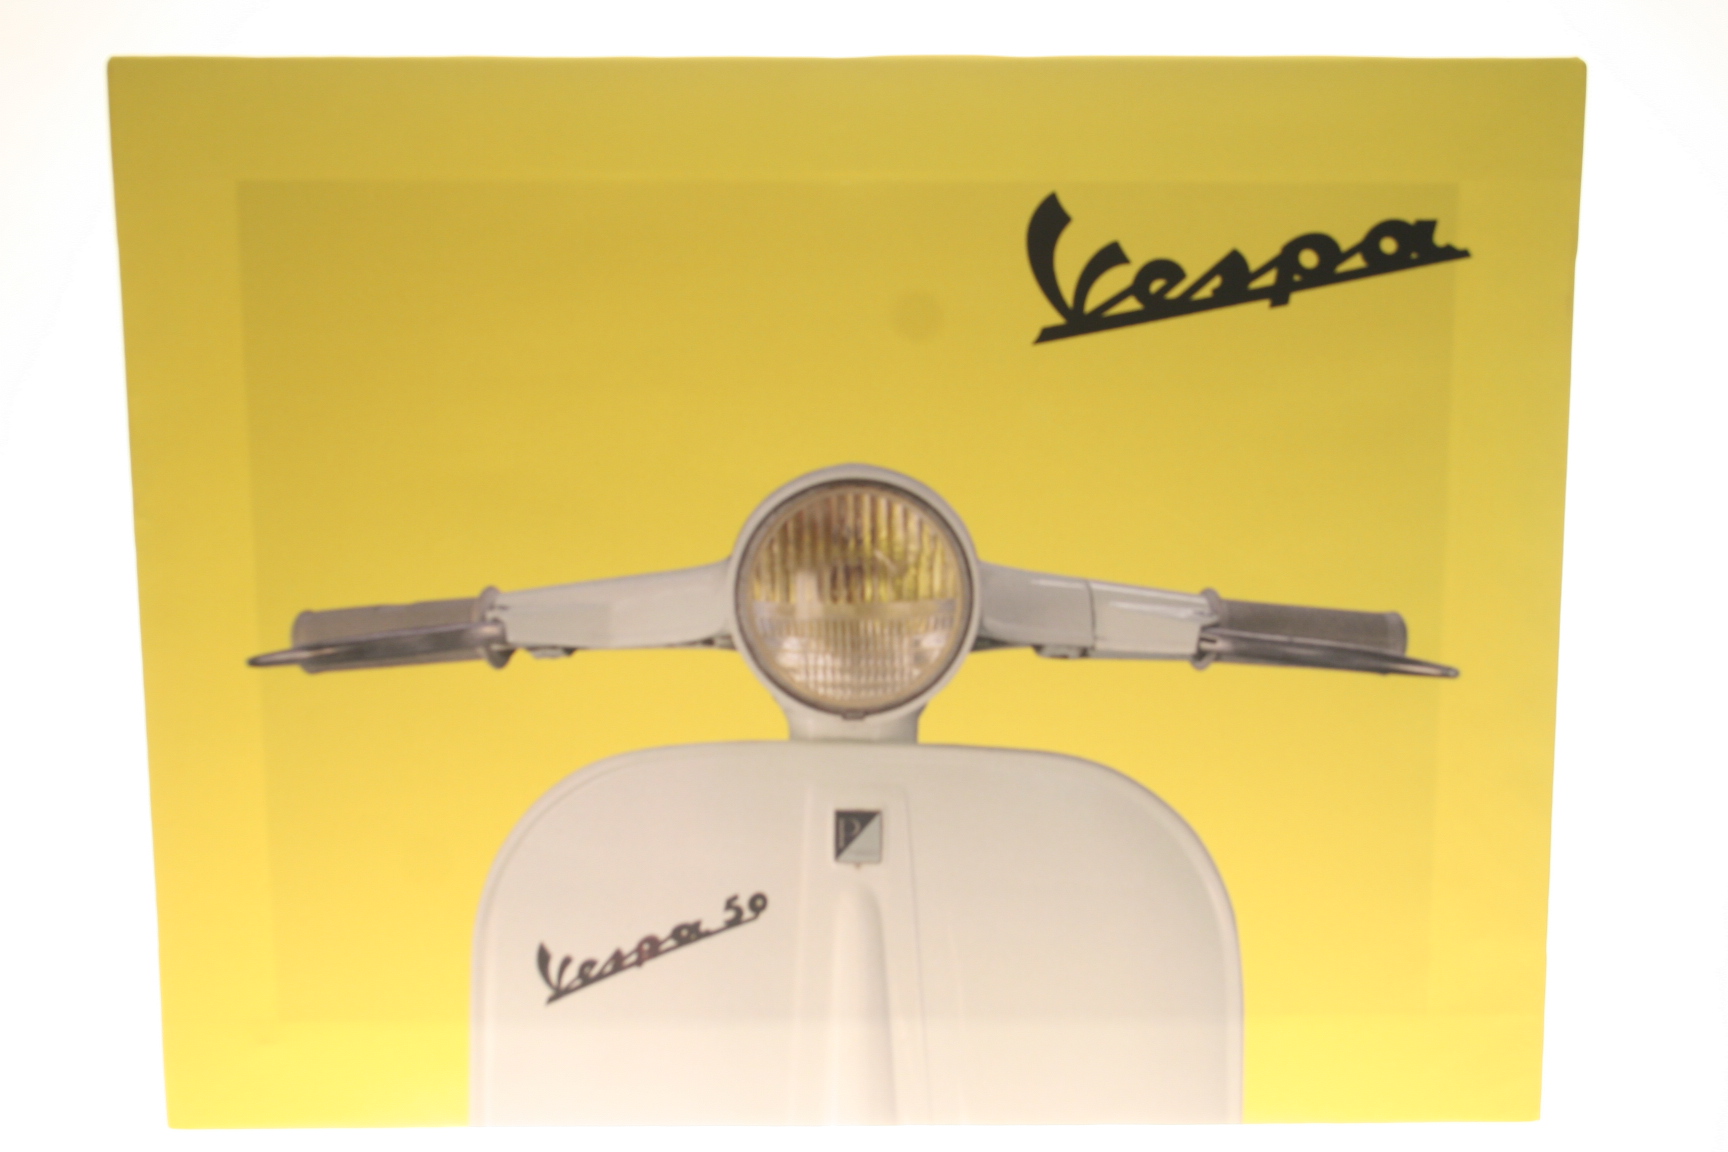 Bild Vespa 50 gelb, Kunstdruck auf Keilrahmen, 59x45cm